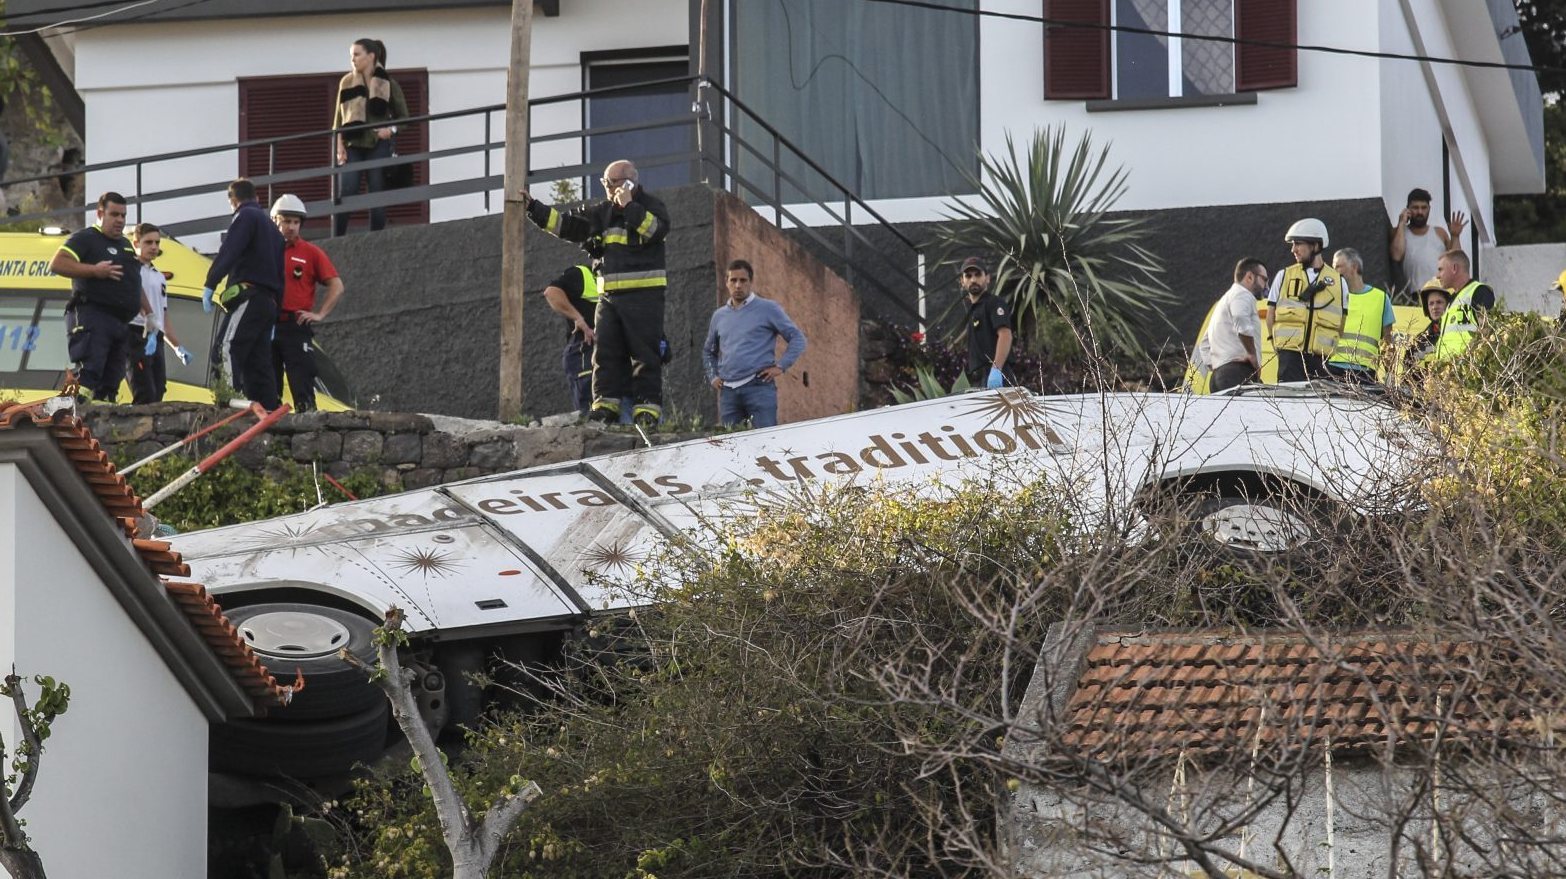 Em 17 de abril de 2019, pelas 18h30, um autocarro de turismo despistou-se na Estrada da Ponta da Oliveira, na freguesia do Caniço, no concelho de Santa Cruz, contíguo ao Funchal a leste, provocando 29 mortos e 27 feridos